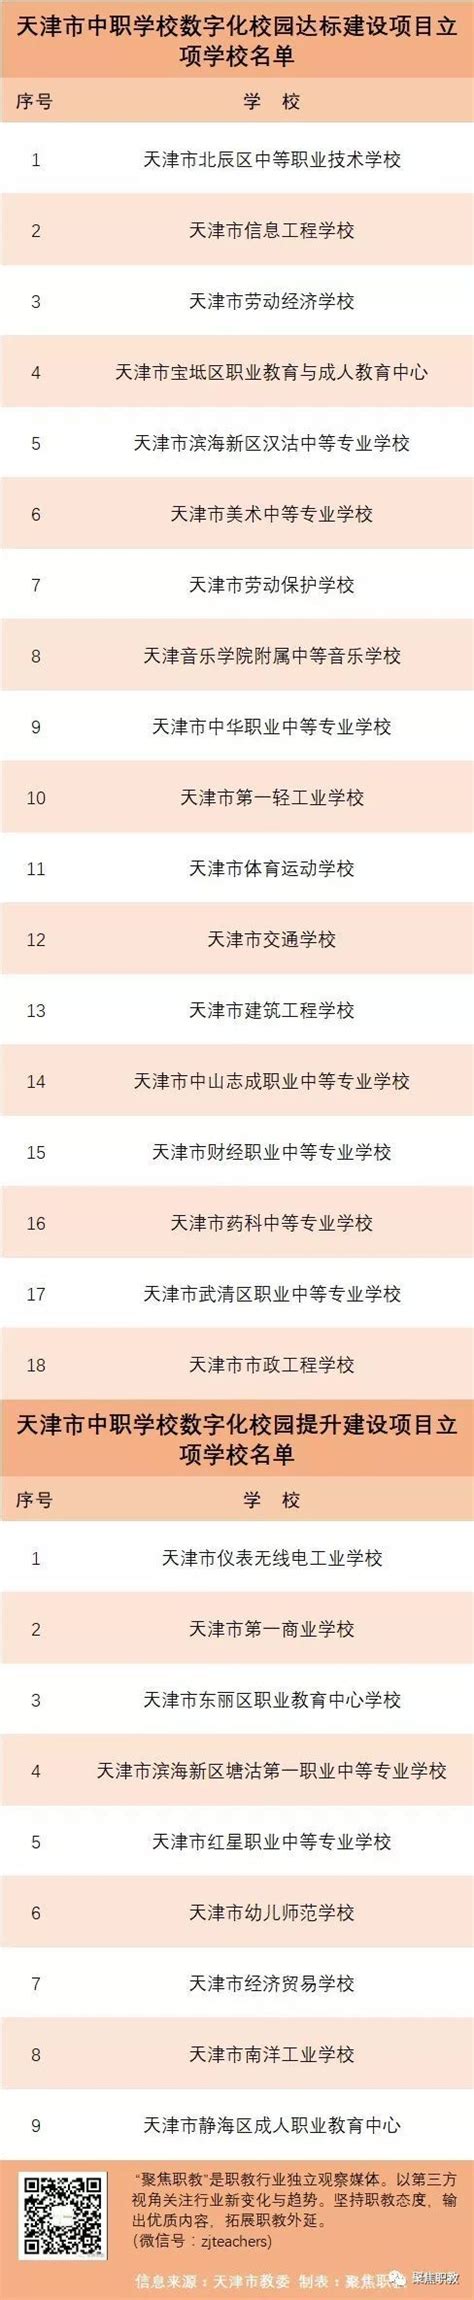 公示丨天津市中等职业学校数字化校园建设项目27所立项学校名单出炉